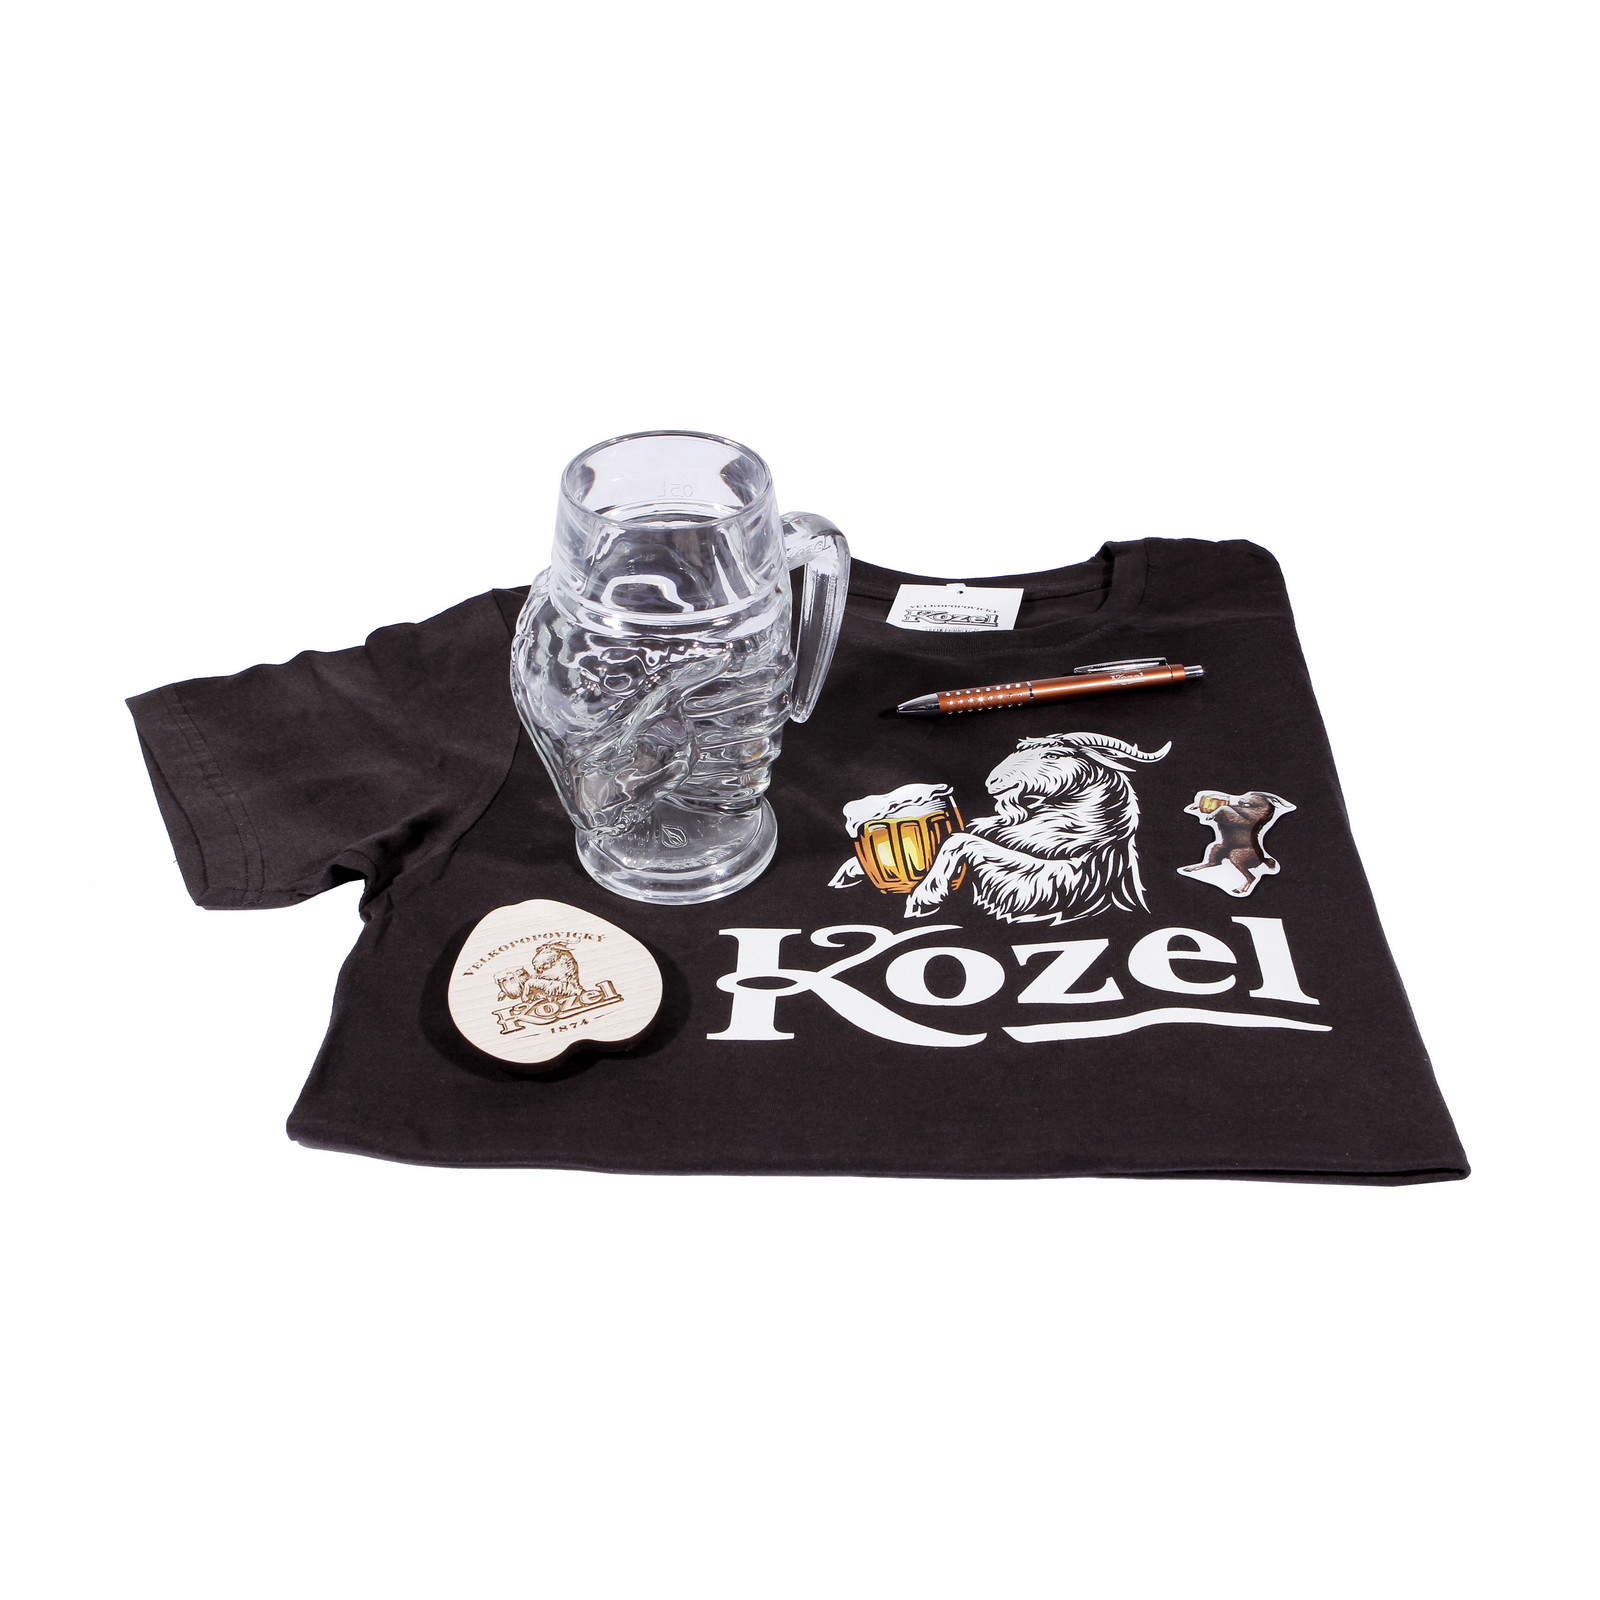 Kozel Box for Women